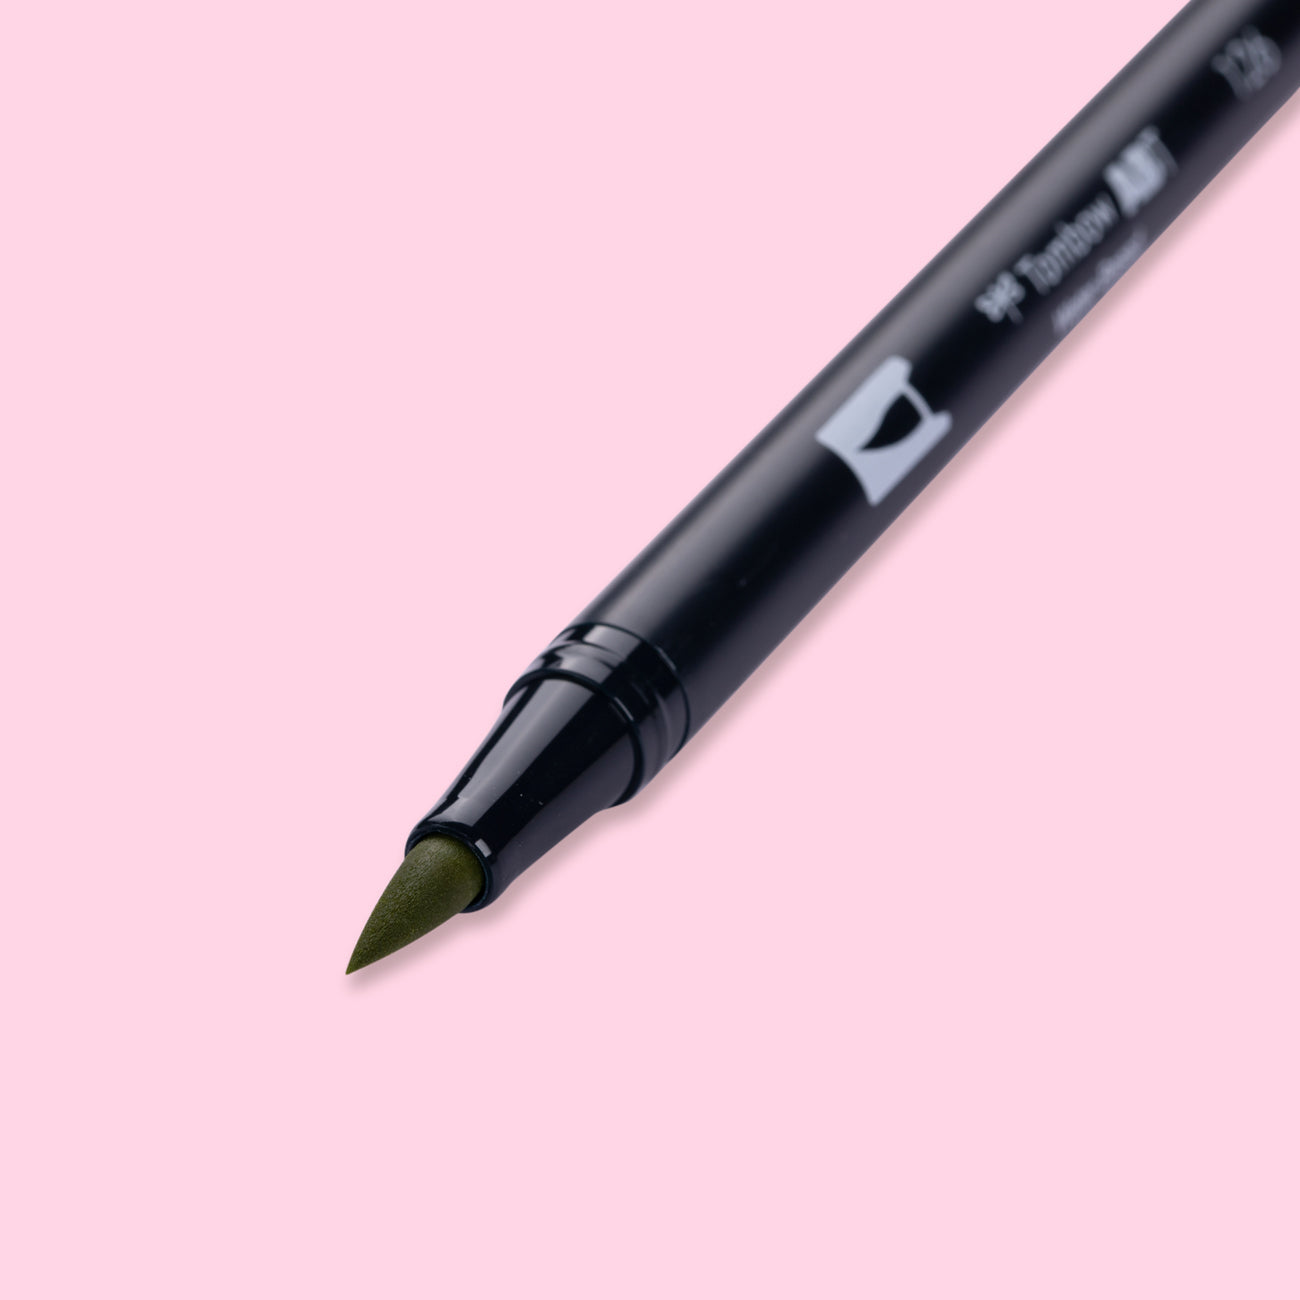 Tombow Abt 126 Dual Brush Pen - Light Olive